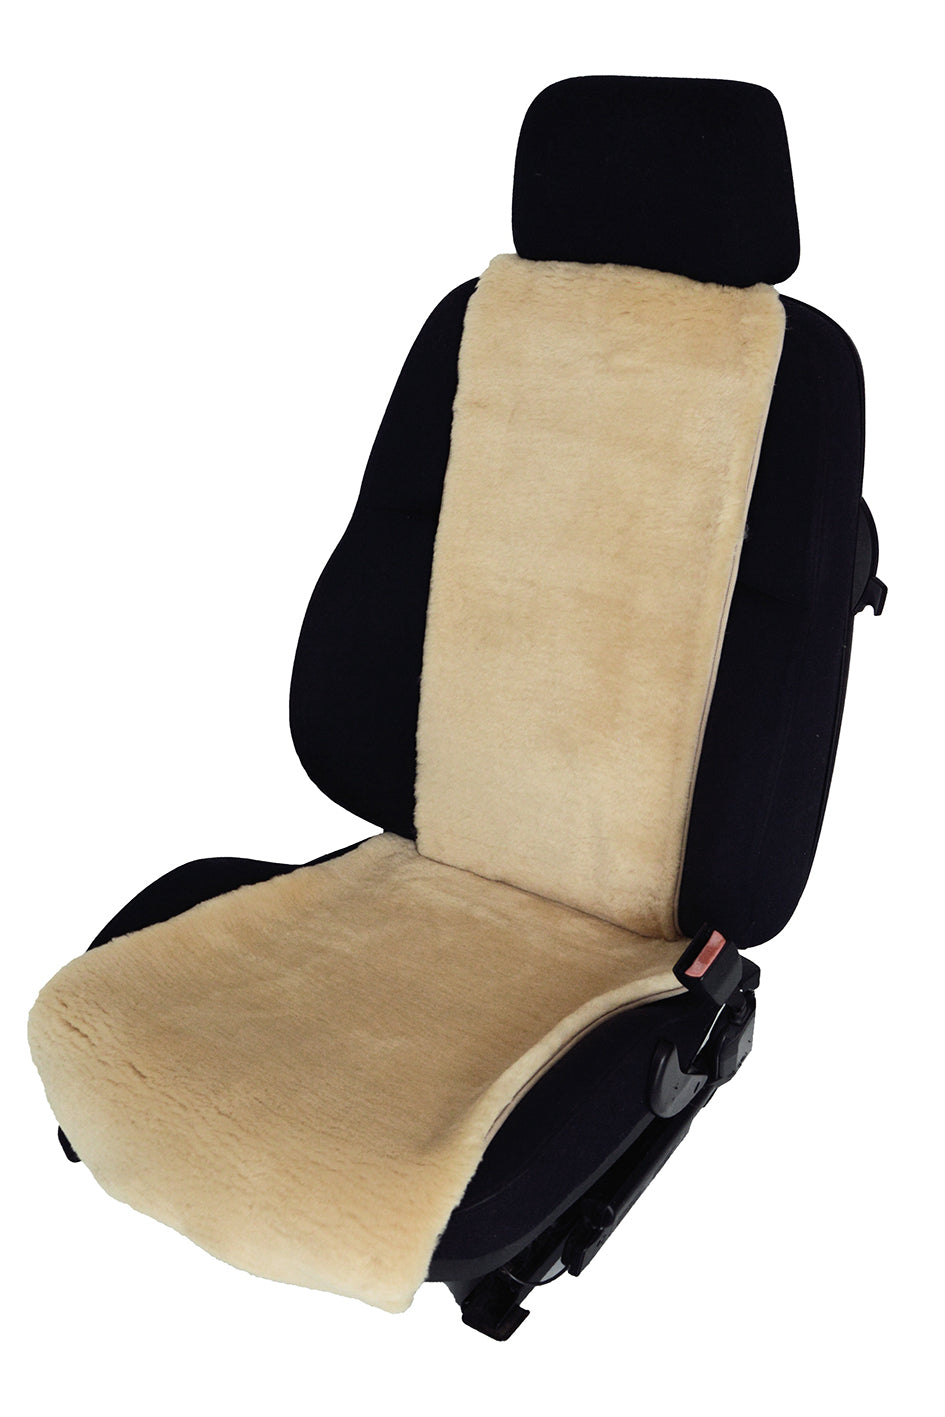 Autositzauflage - Lammfell - Sitzbezug - Sport - Premium, Lammfelle für  Auto, Bett und Wohnzimmer in höchster Qualität